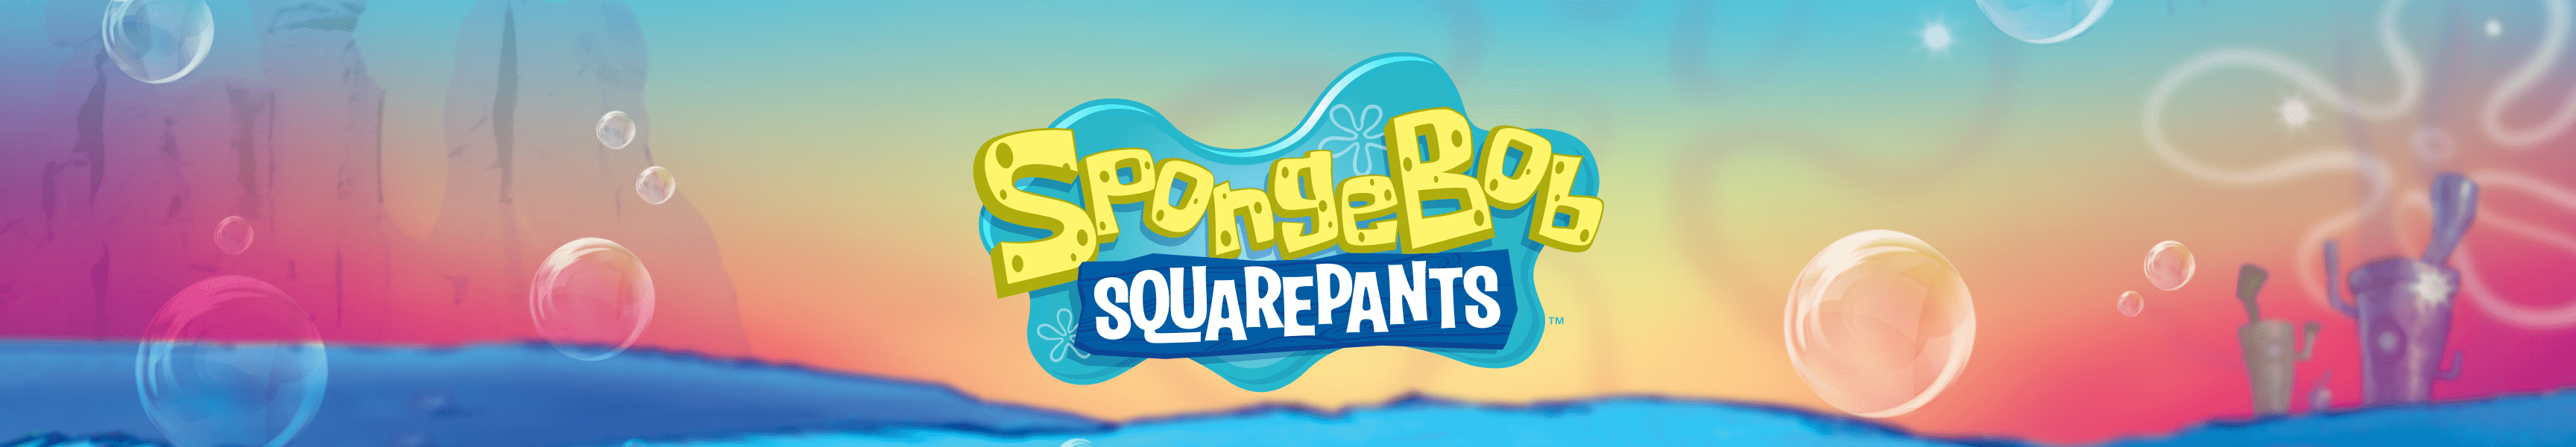 SpongeBob SquarePants Leggings